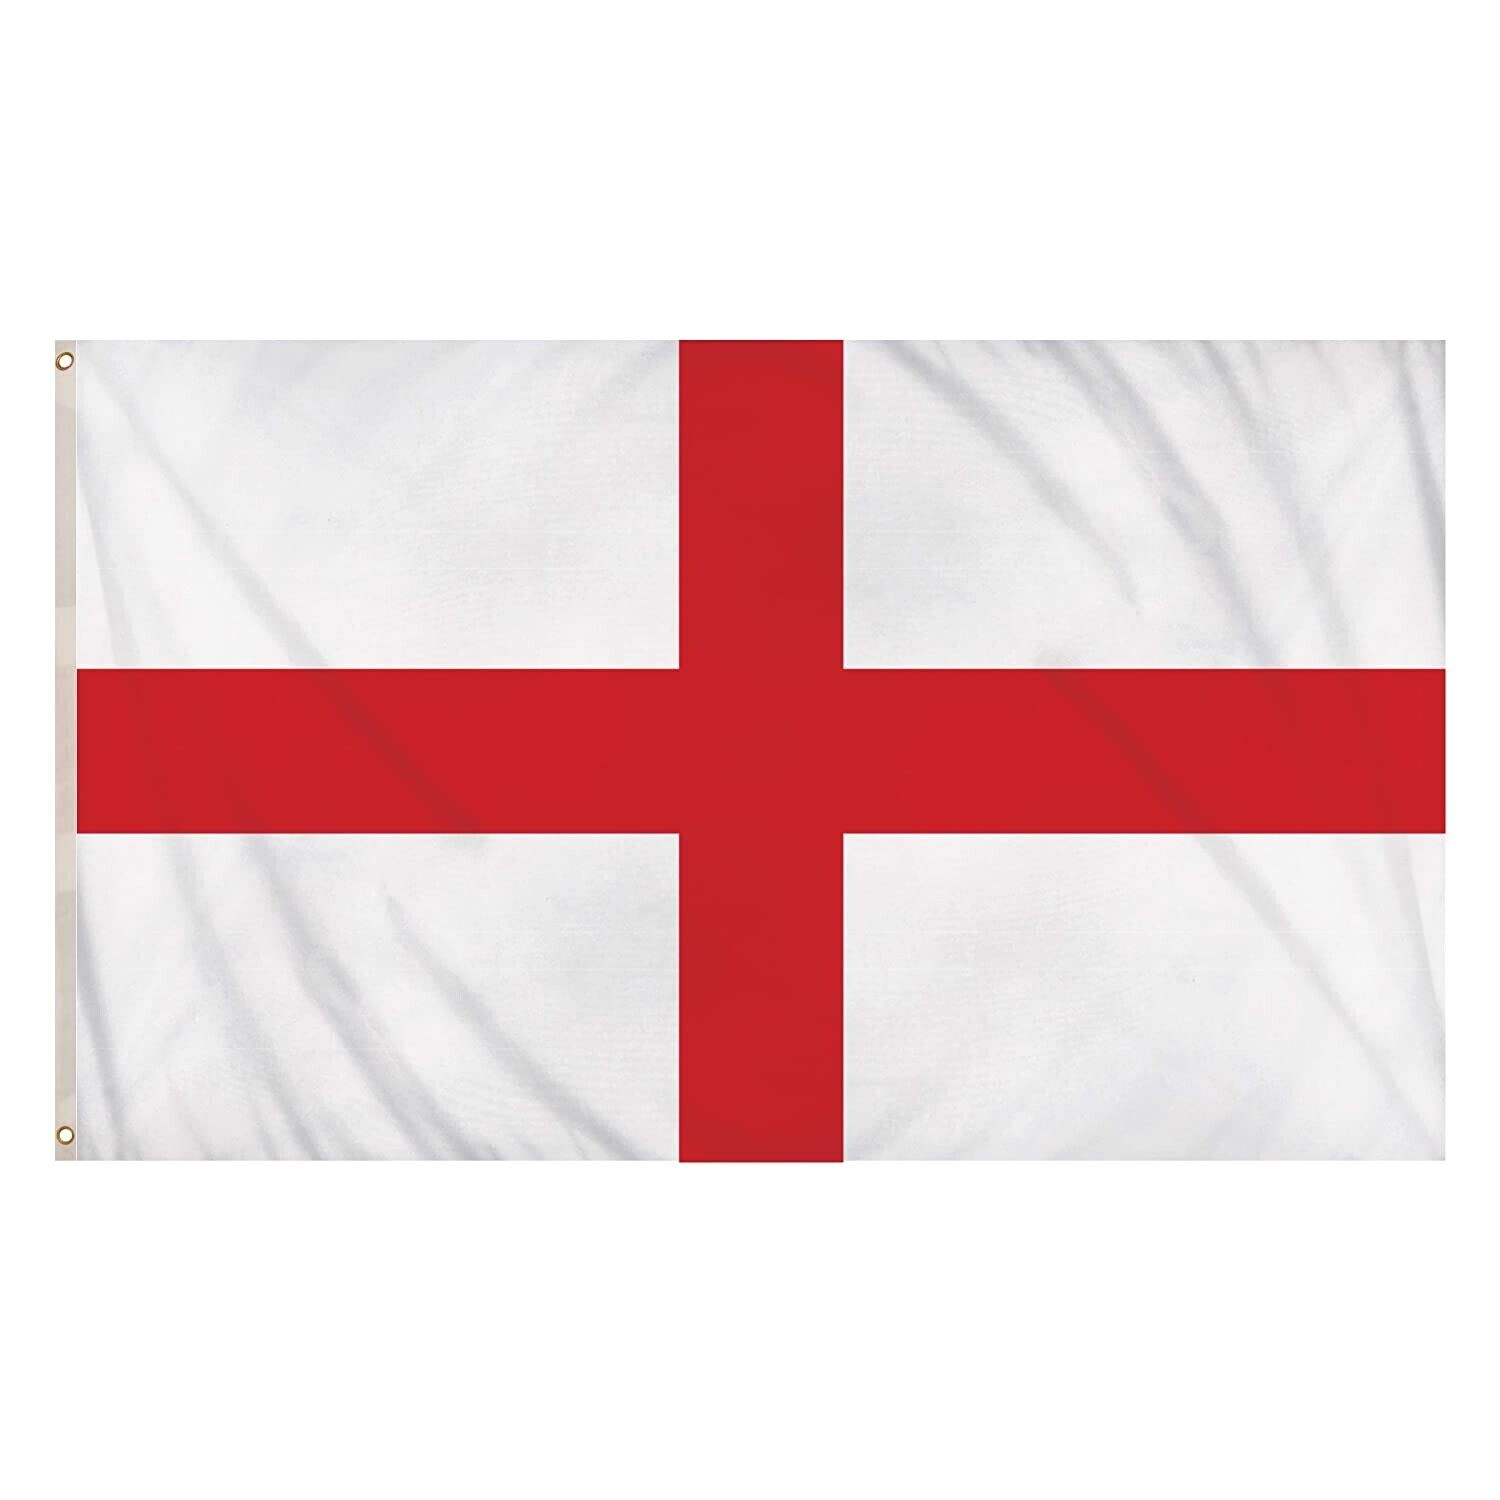 LARGE 5FT X 3FT ENGLAND FLAG UK ENGLISH ST GEORGE CROSS NATIONAL BRASS EYELETS